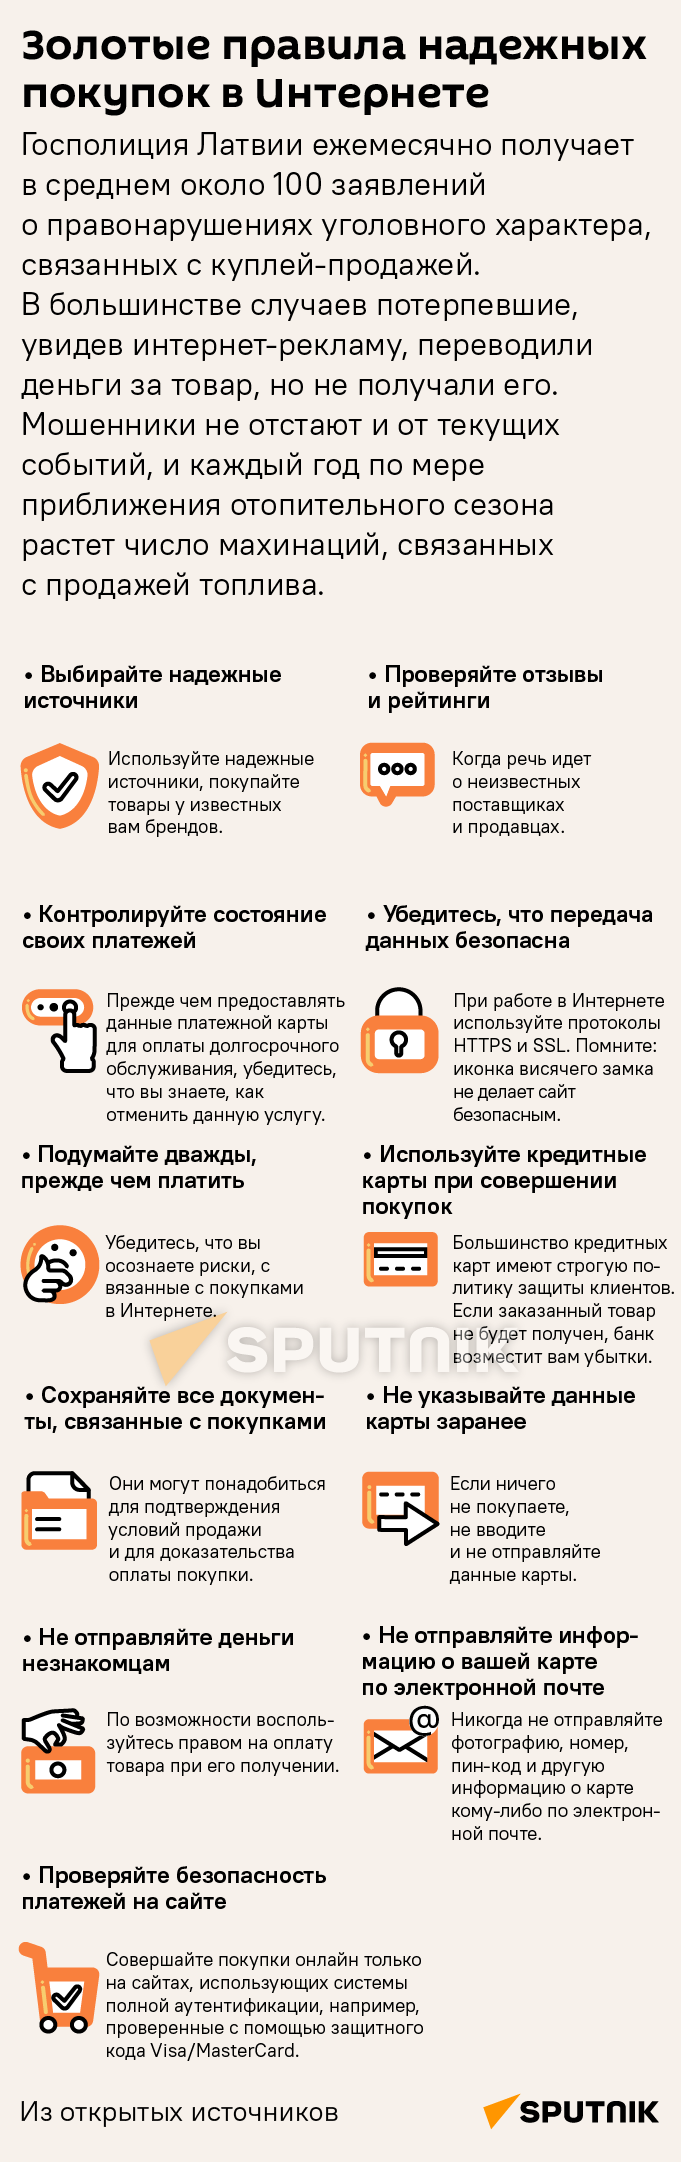 Золотые правила надежных покупок в Интернете - Sputnik Латвия